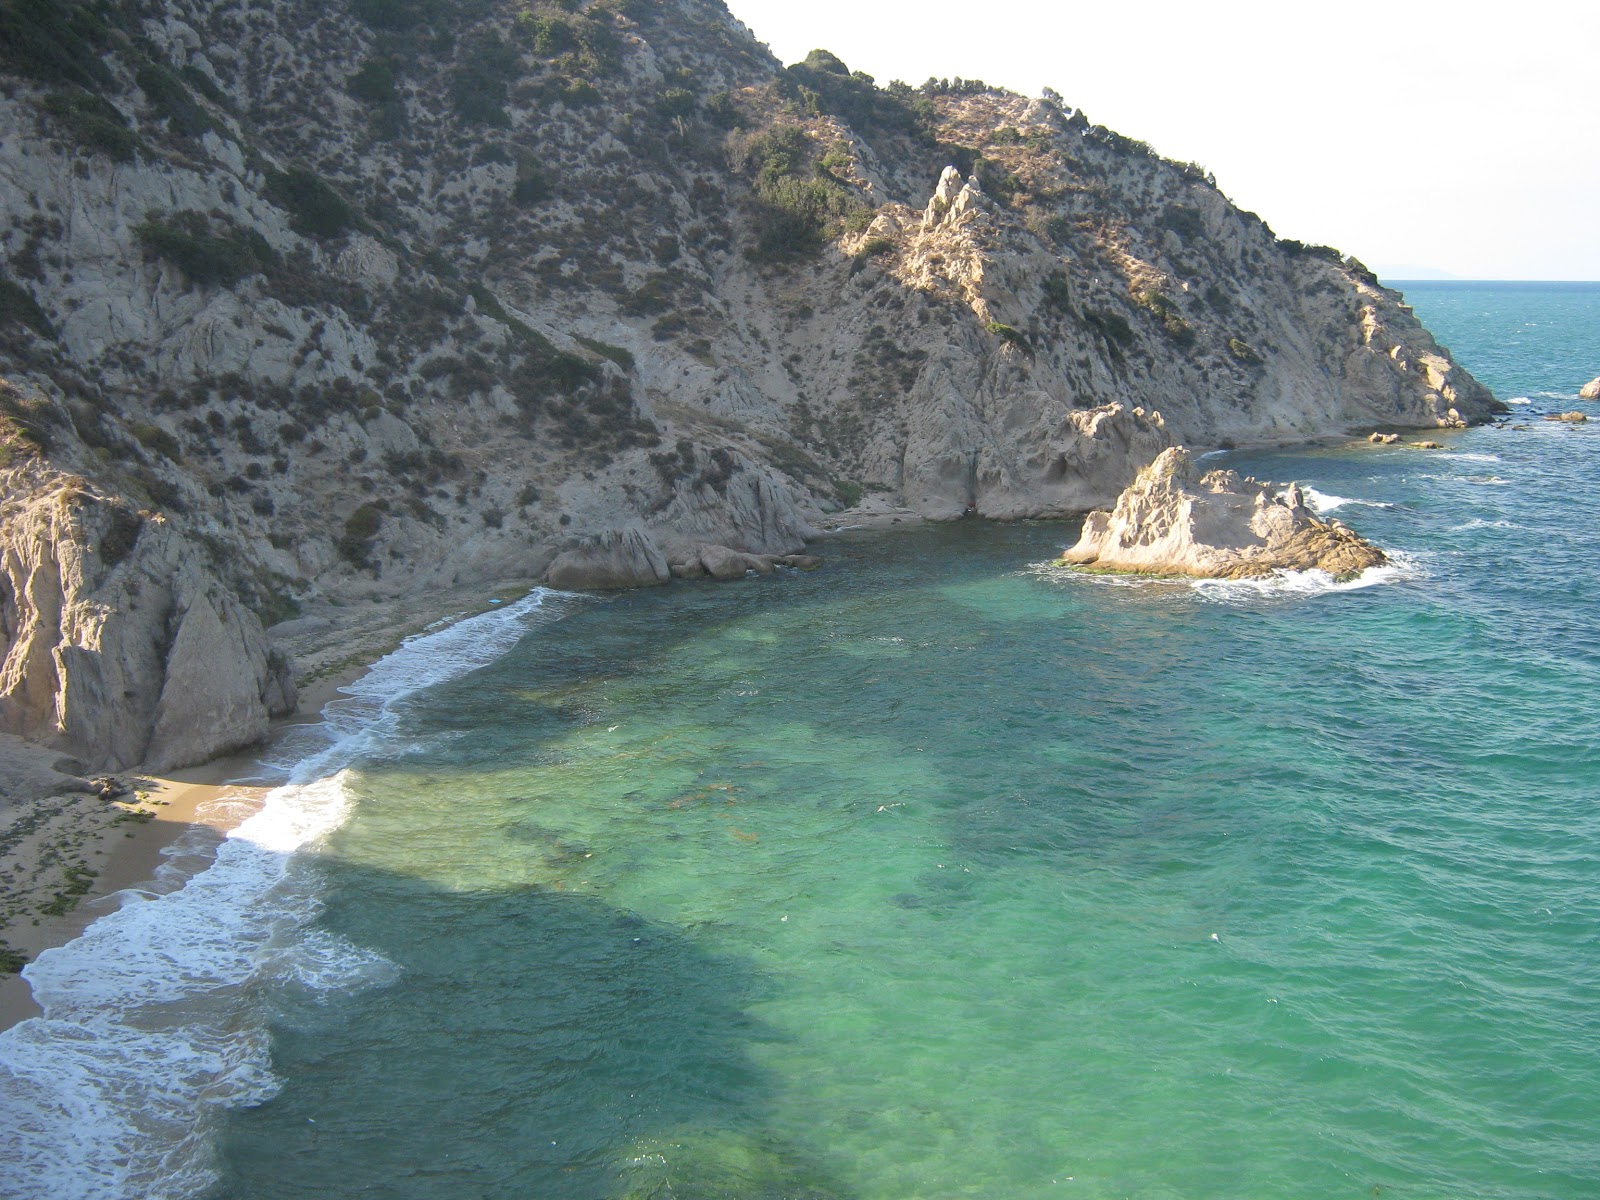 Zdjęcie Sogutluli beach IV z powierzchnią zielona woda